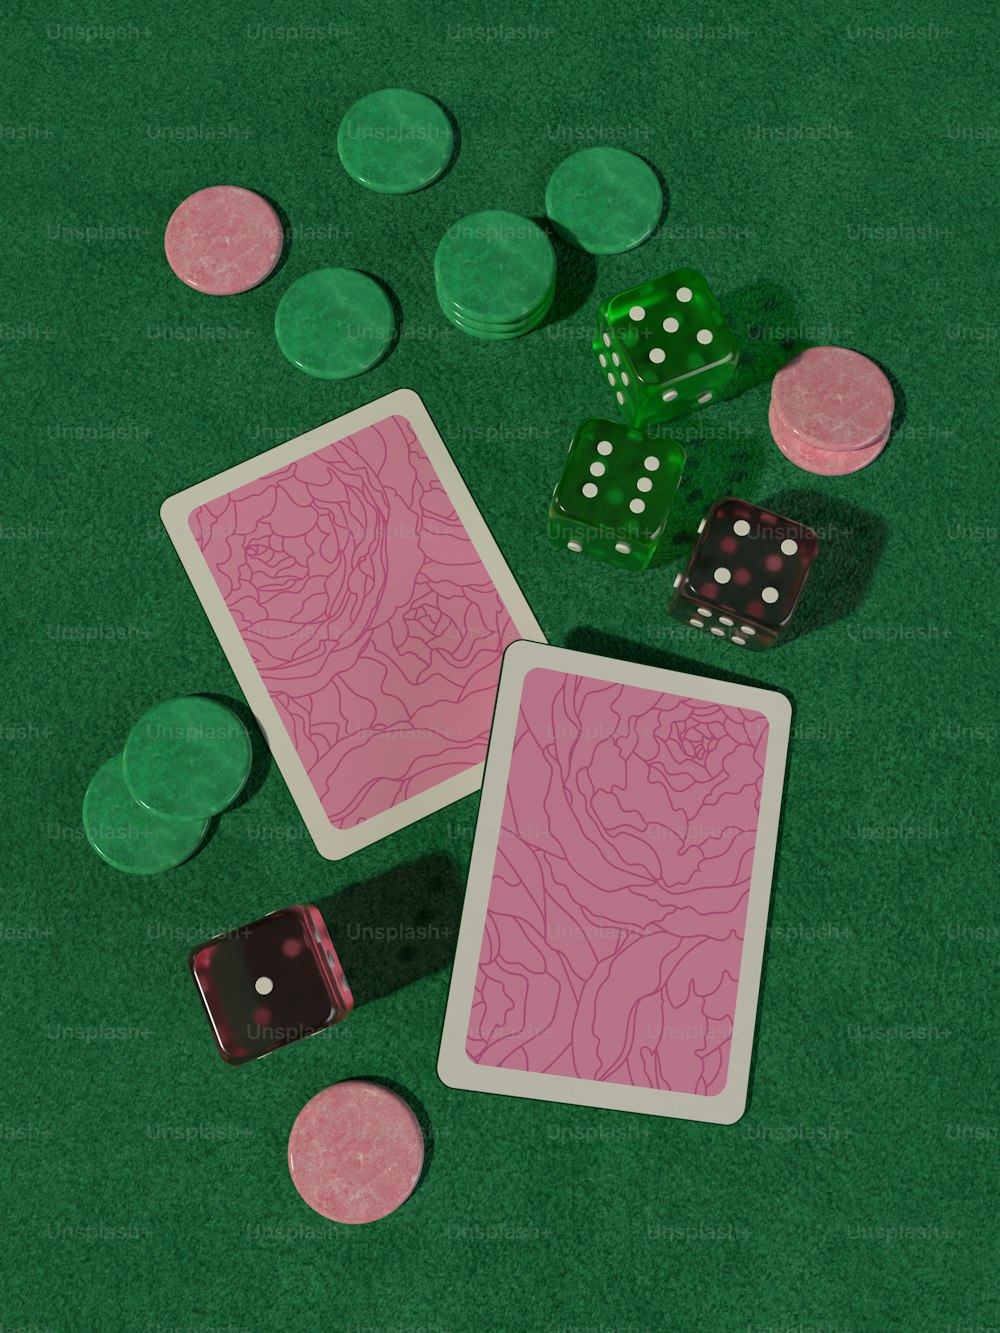 Deux cartes à jouer et deux dés sur une table verte